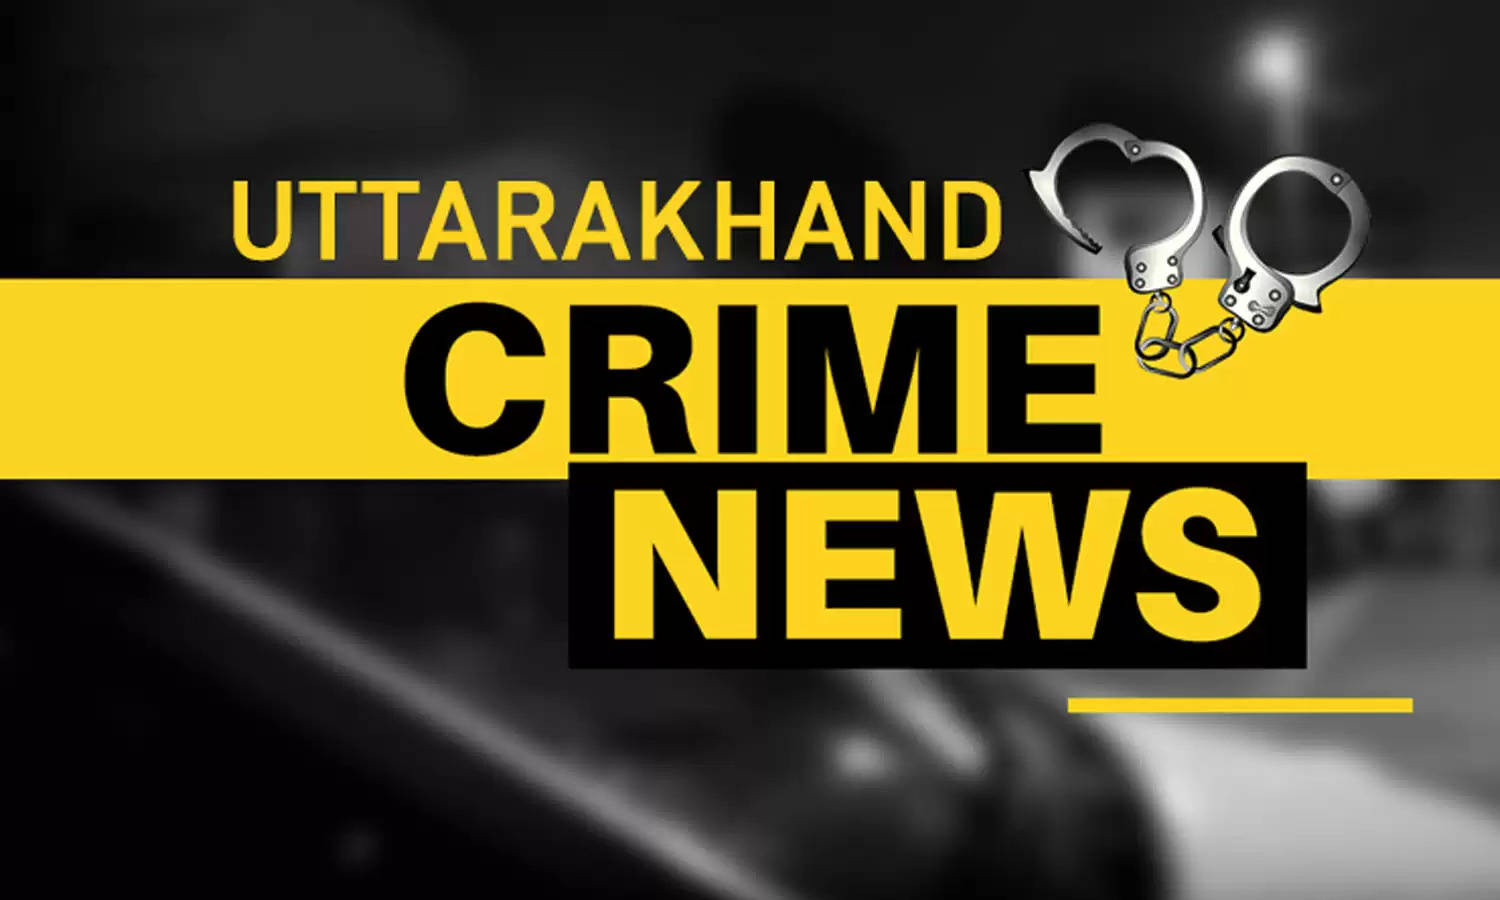 Uttarakhand Crime : महिला को जबरन घर के पास कार में बुलाकर किया दुष्कर्म, अश्लील फोटो खींचकर ब्लैकमेल करने का भी आरोप